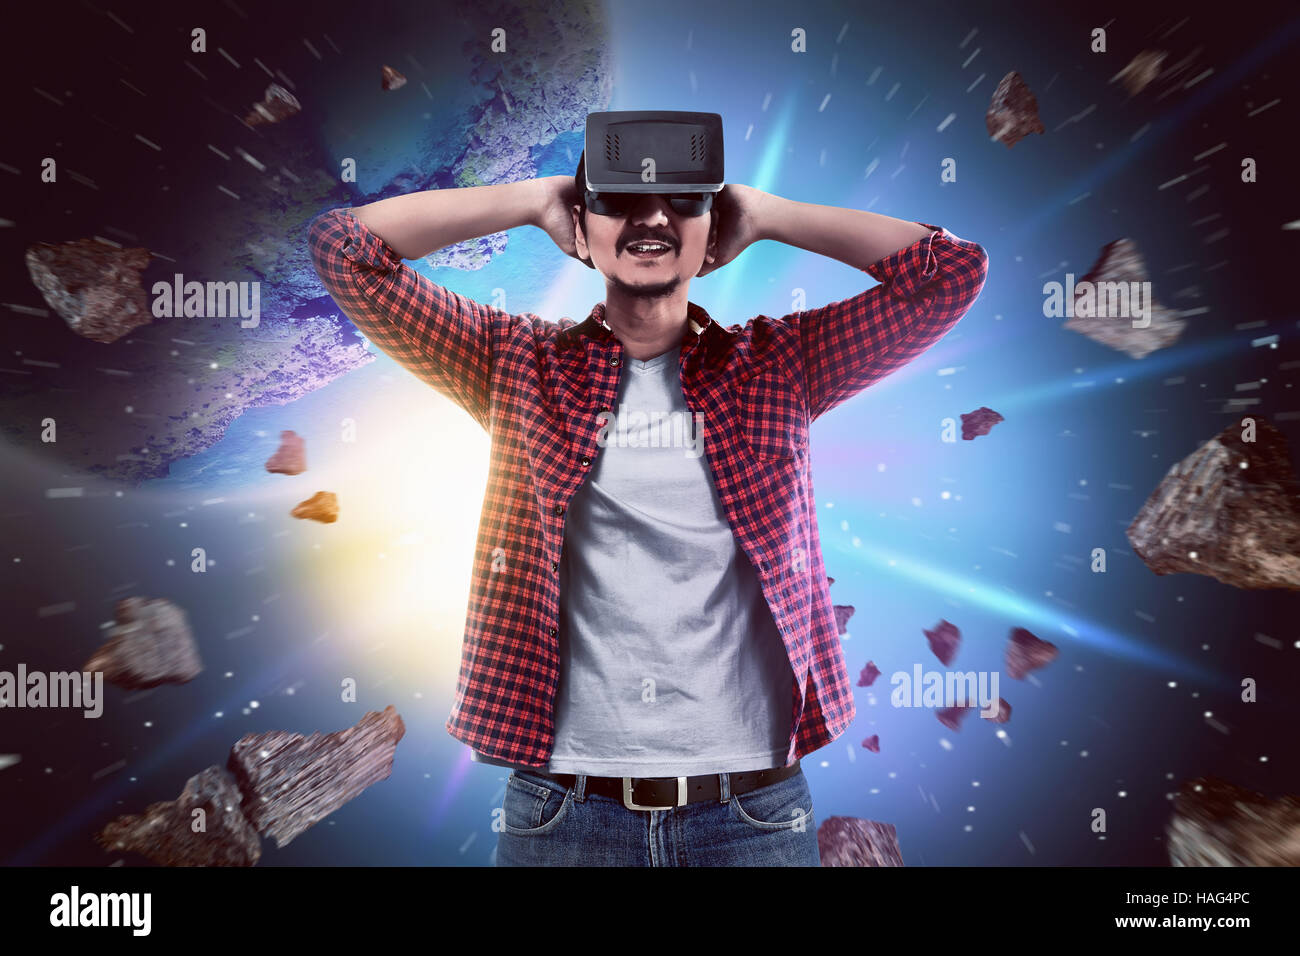 Junge asiatische Mann Verschleiß VR Kopfhörer bekommen in virtual-Reality- Welt Stockfotografie - Alamy